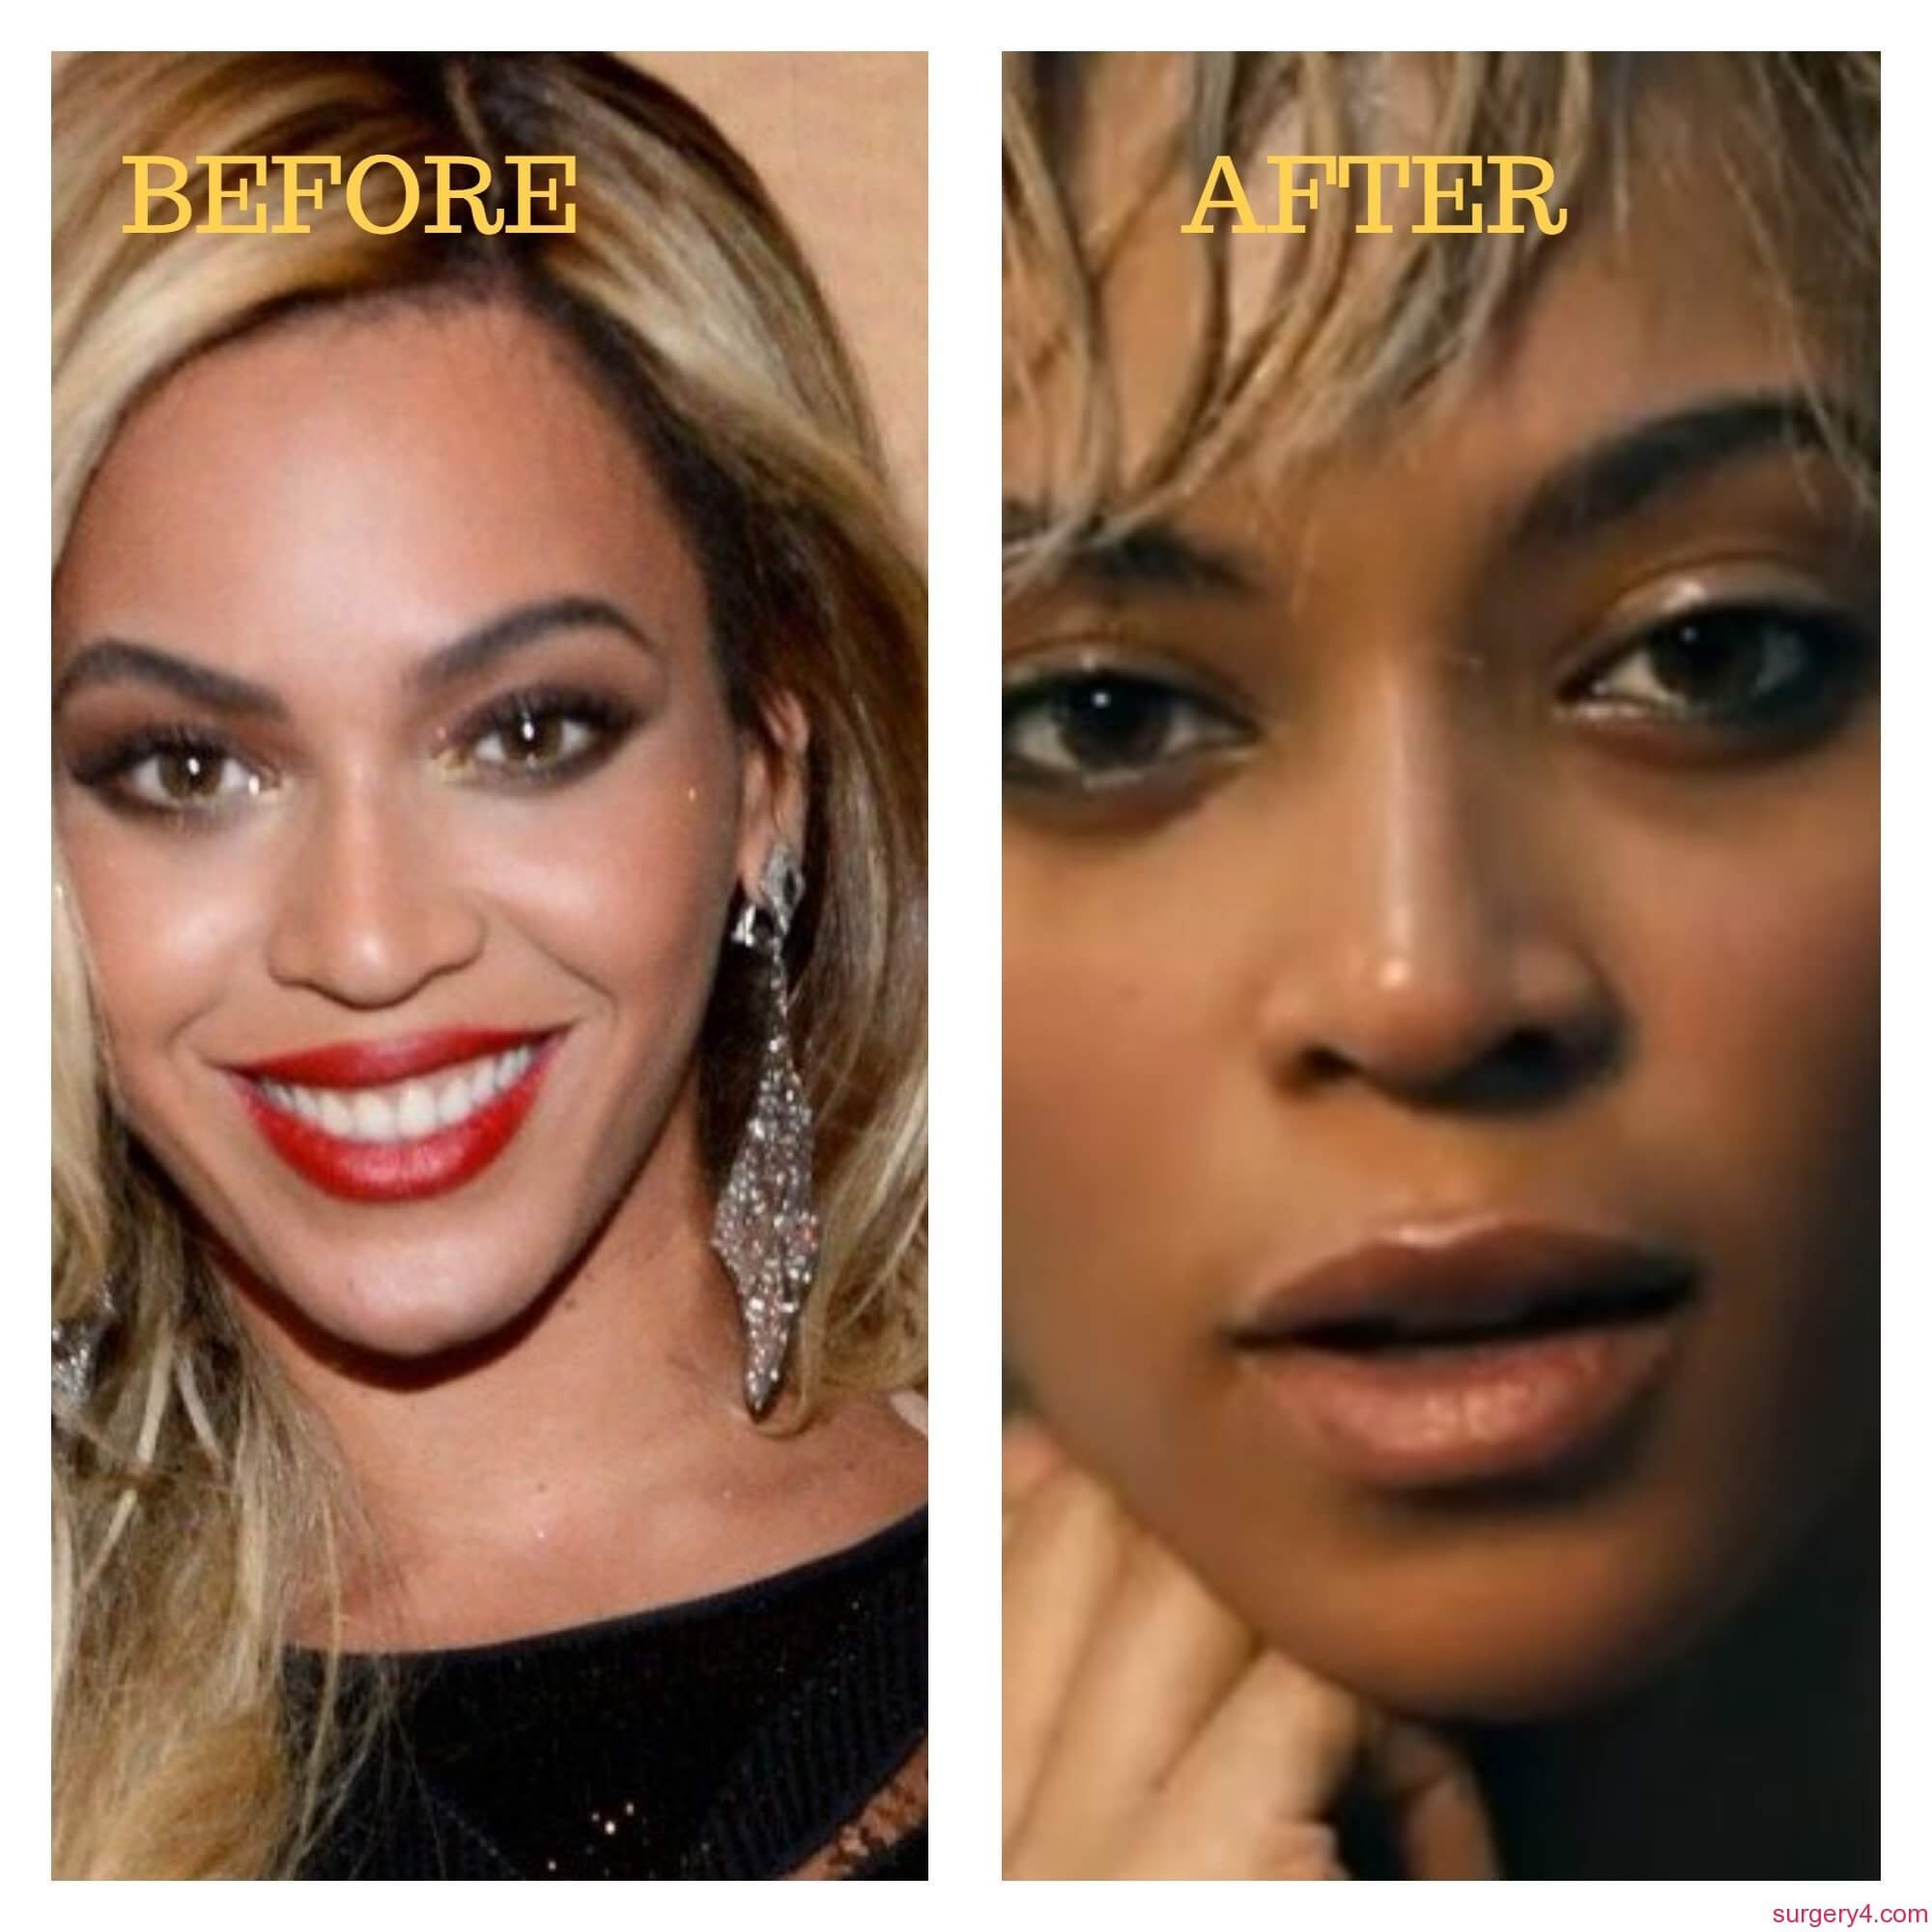 Beyonce Nose Job Photos [Before & After] - Surgery4.